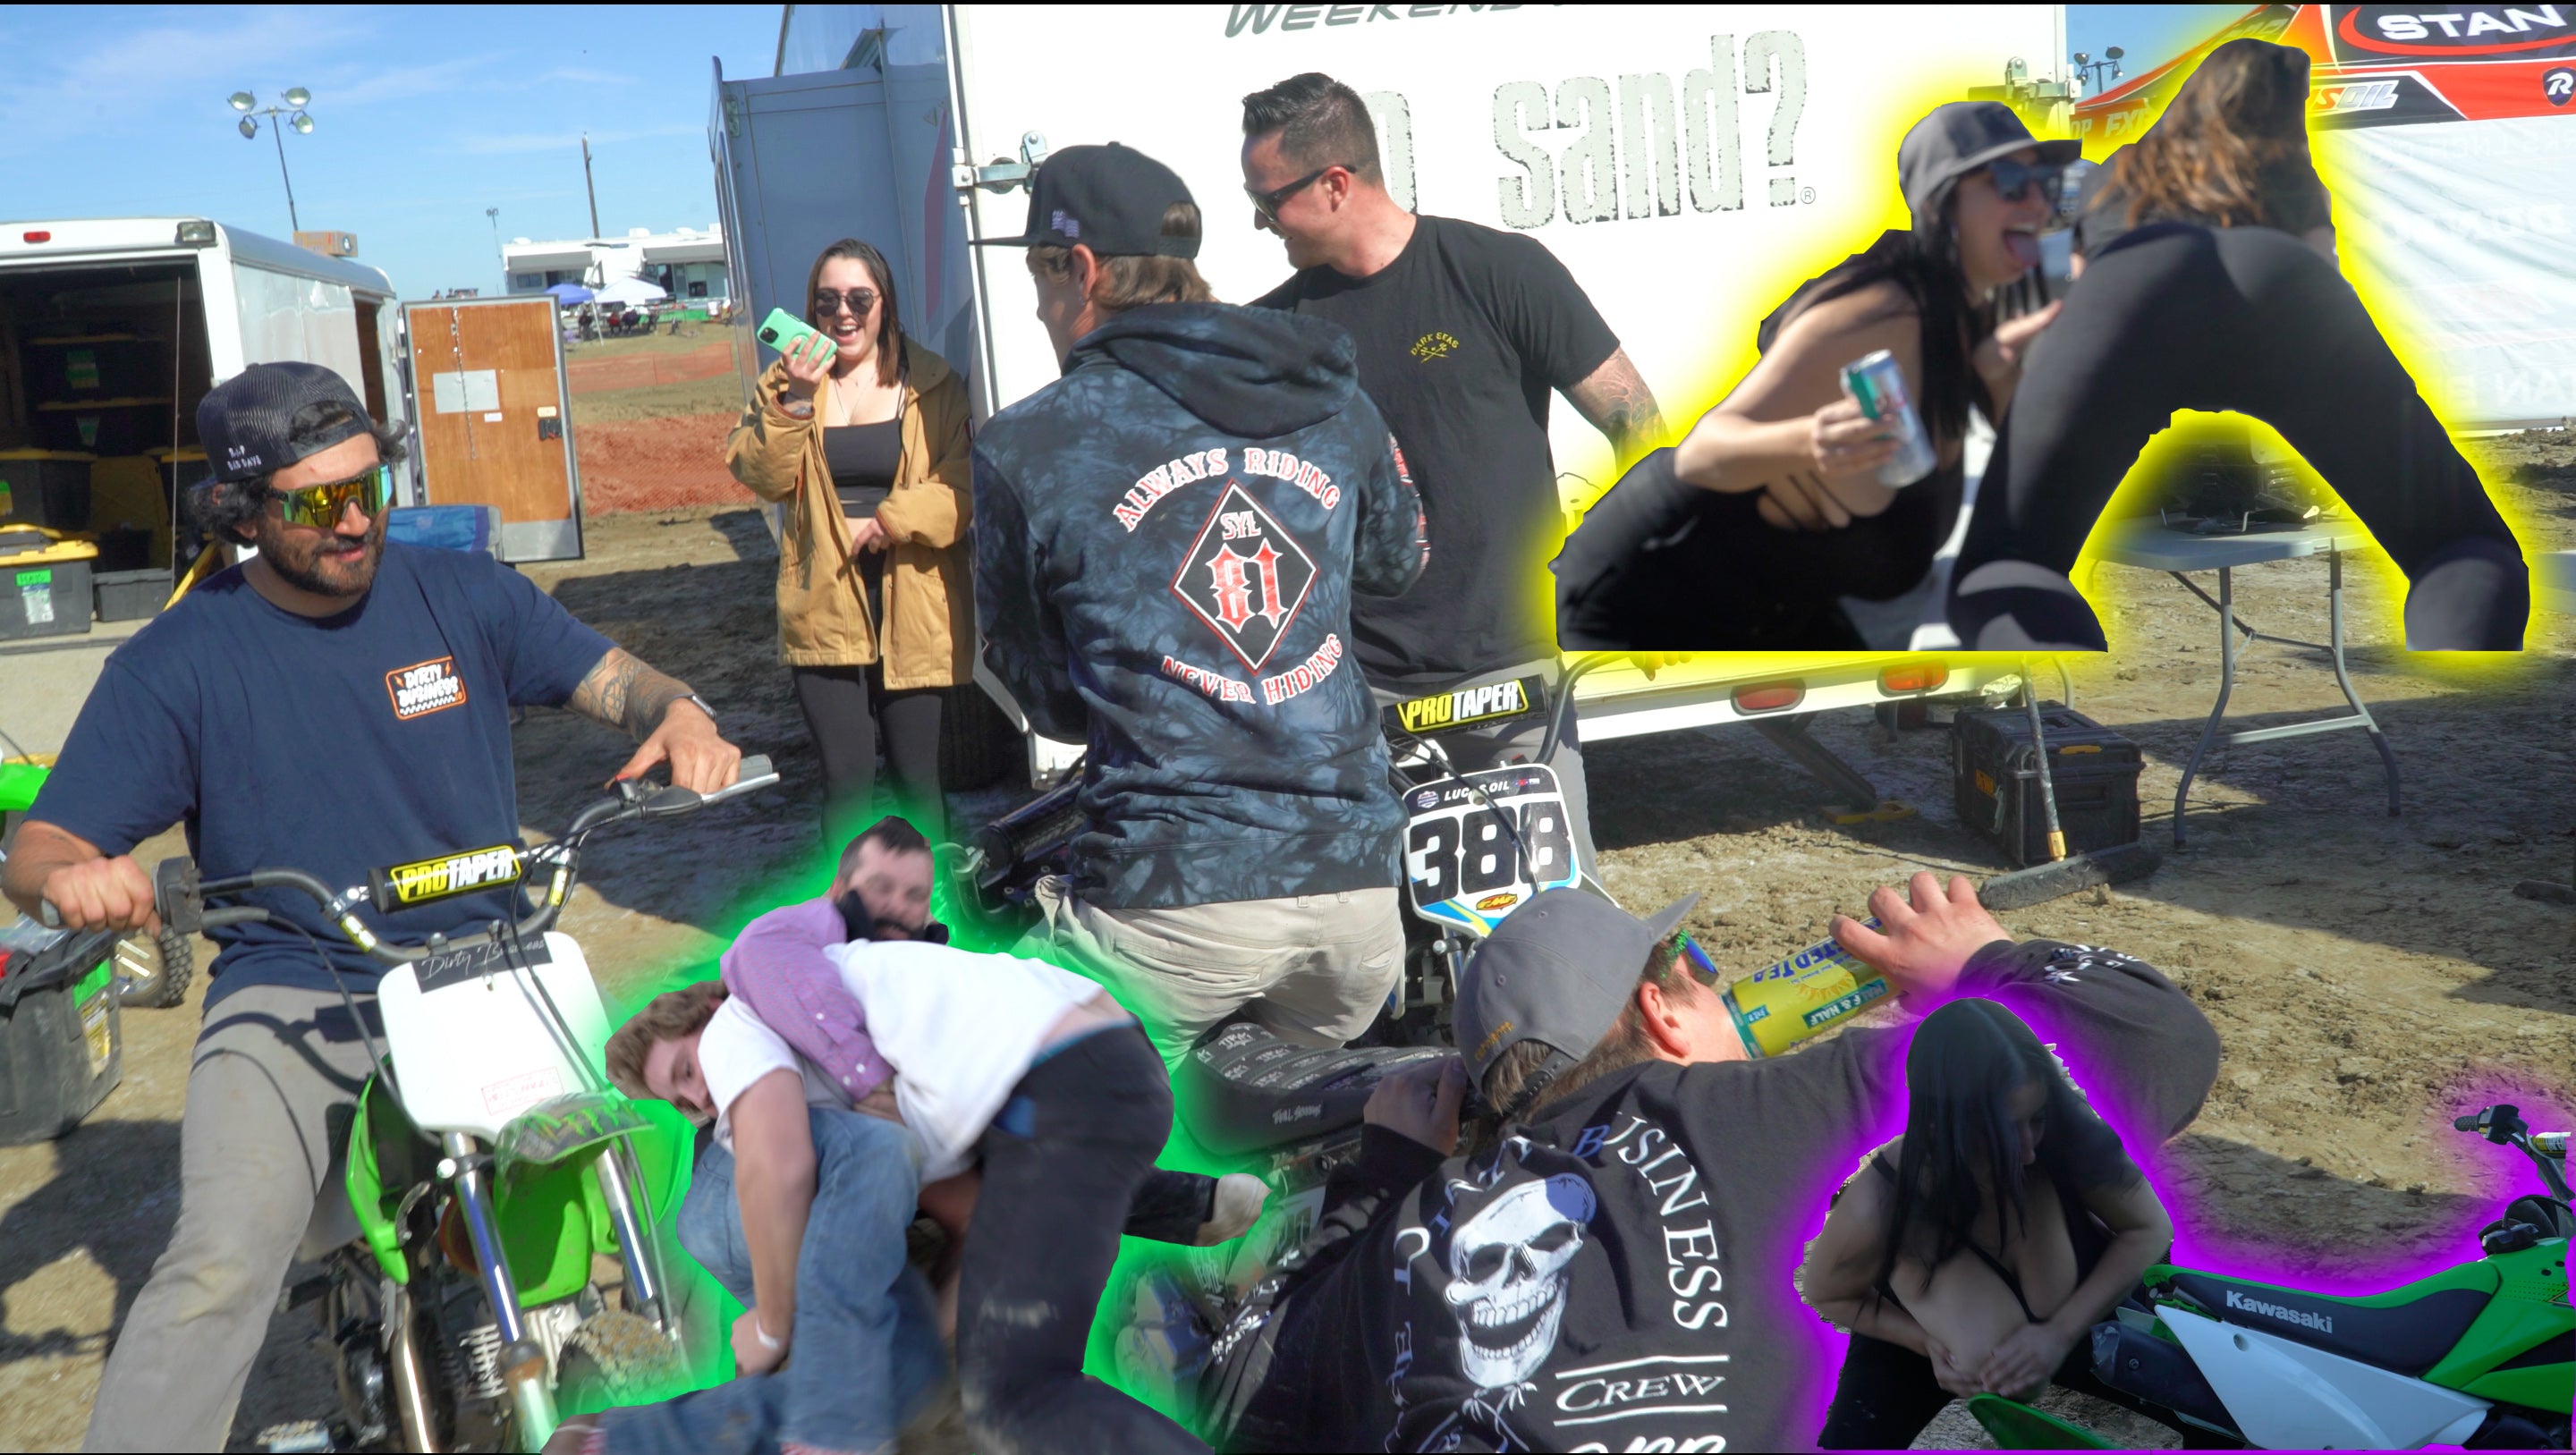 Load video: dirty business co dirt bike race vlog party pitbike girls twerk beer